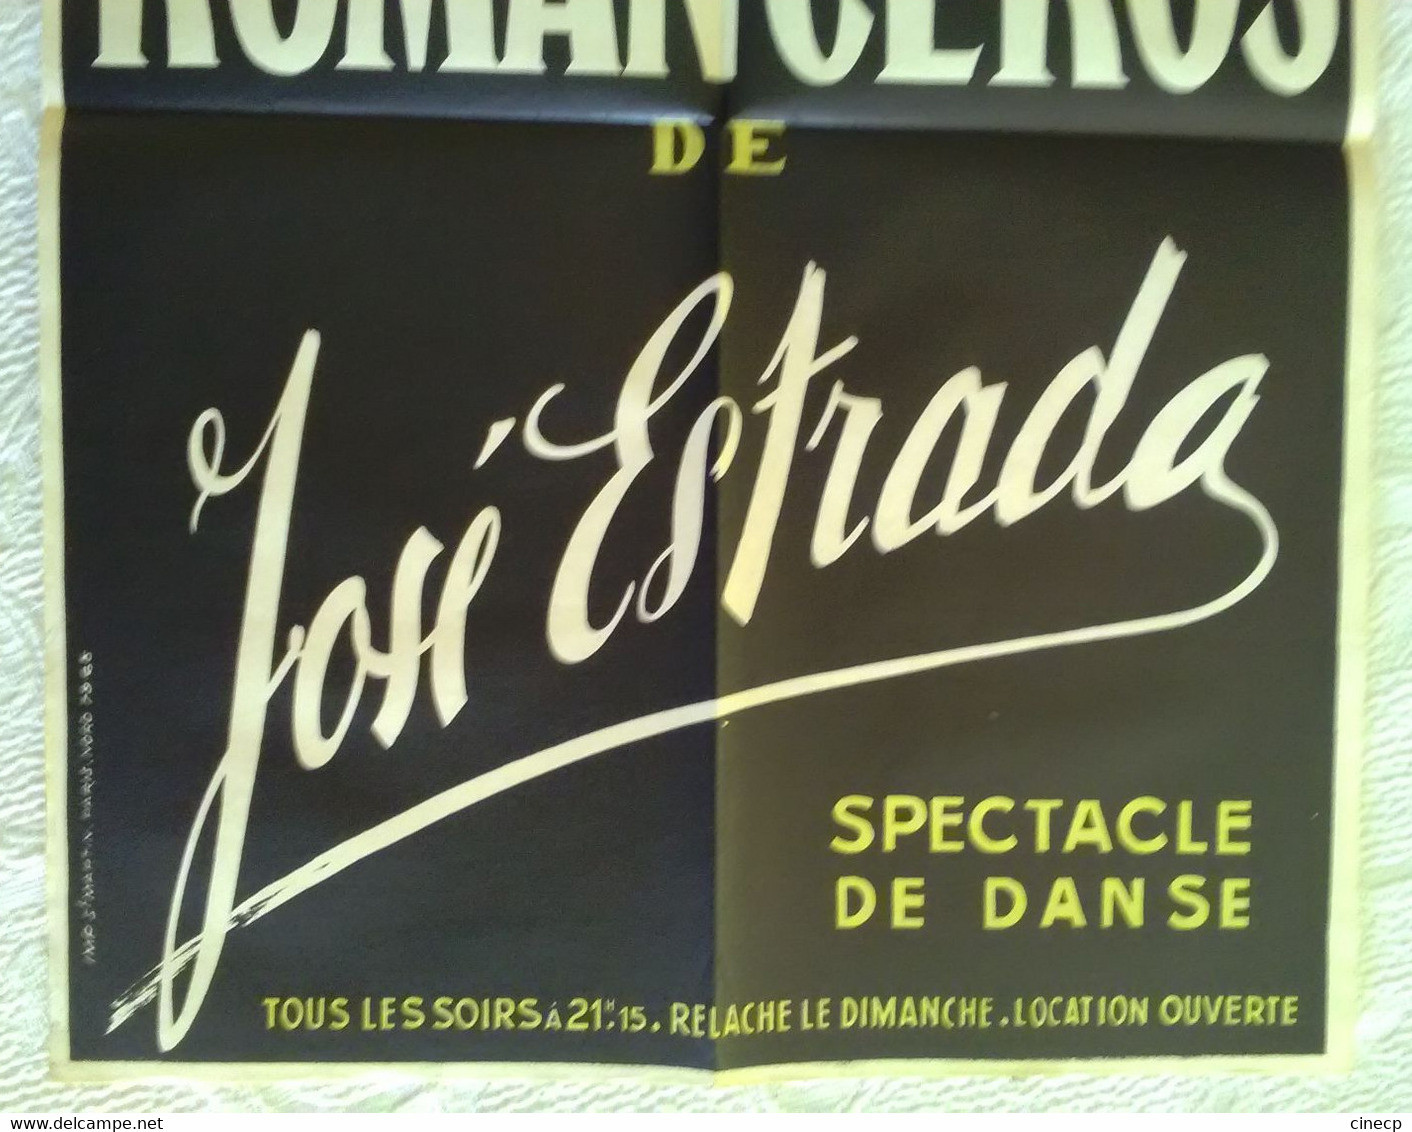 AFFICHE ORIGINALE ANCIENNE Spectacle Danse LES ROMANCEROS De José ESTRADA Théâtre Marigny Volterra Imp St Martin 1950's - Affiches & Posters